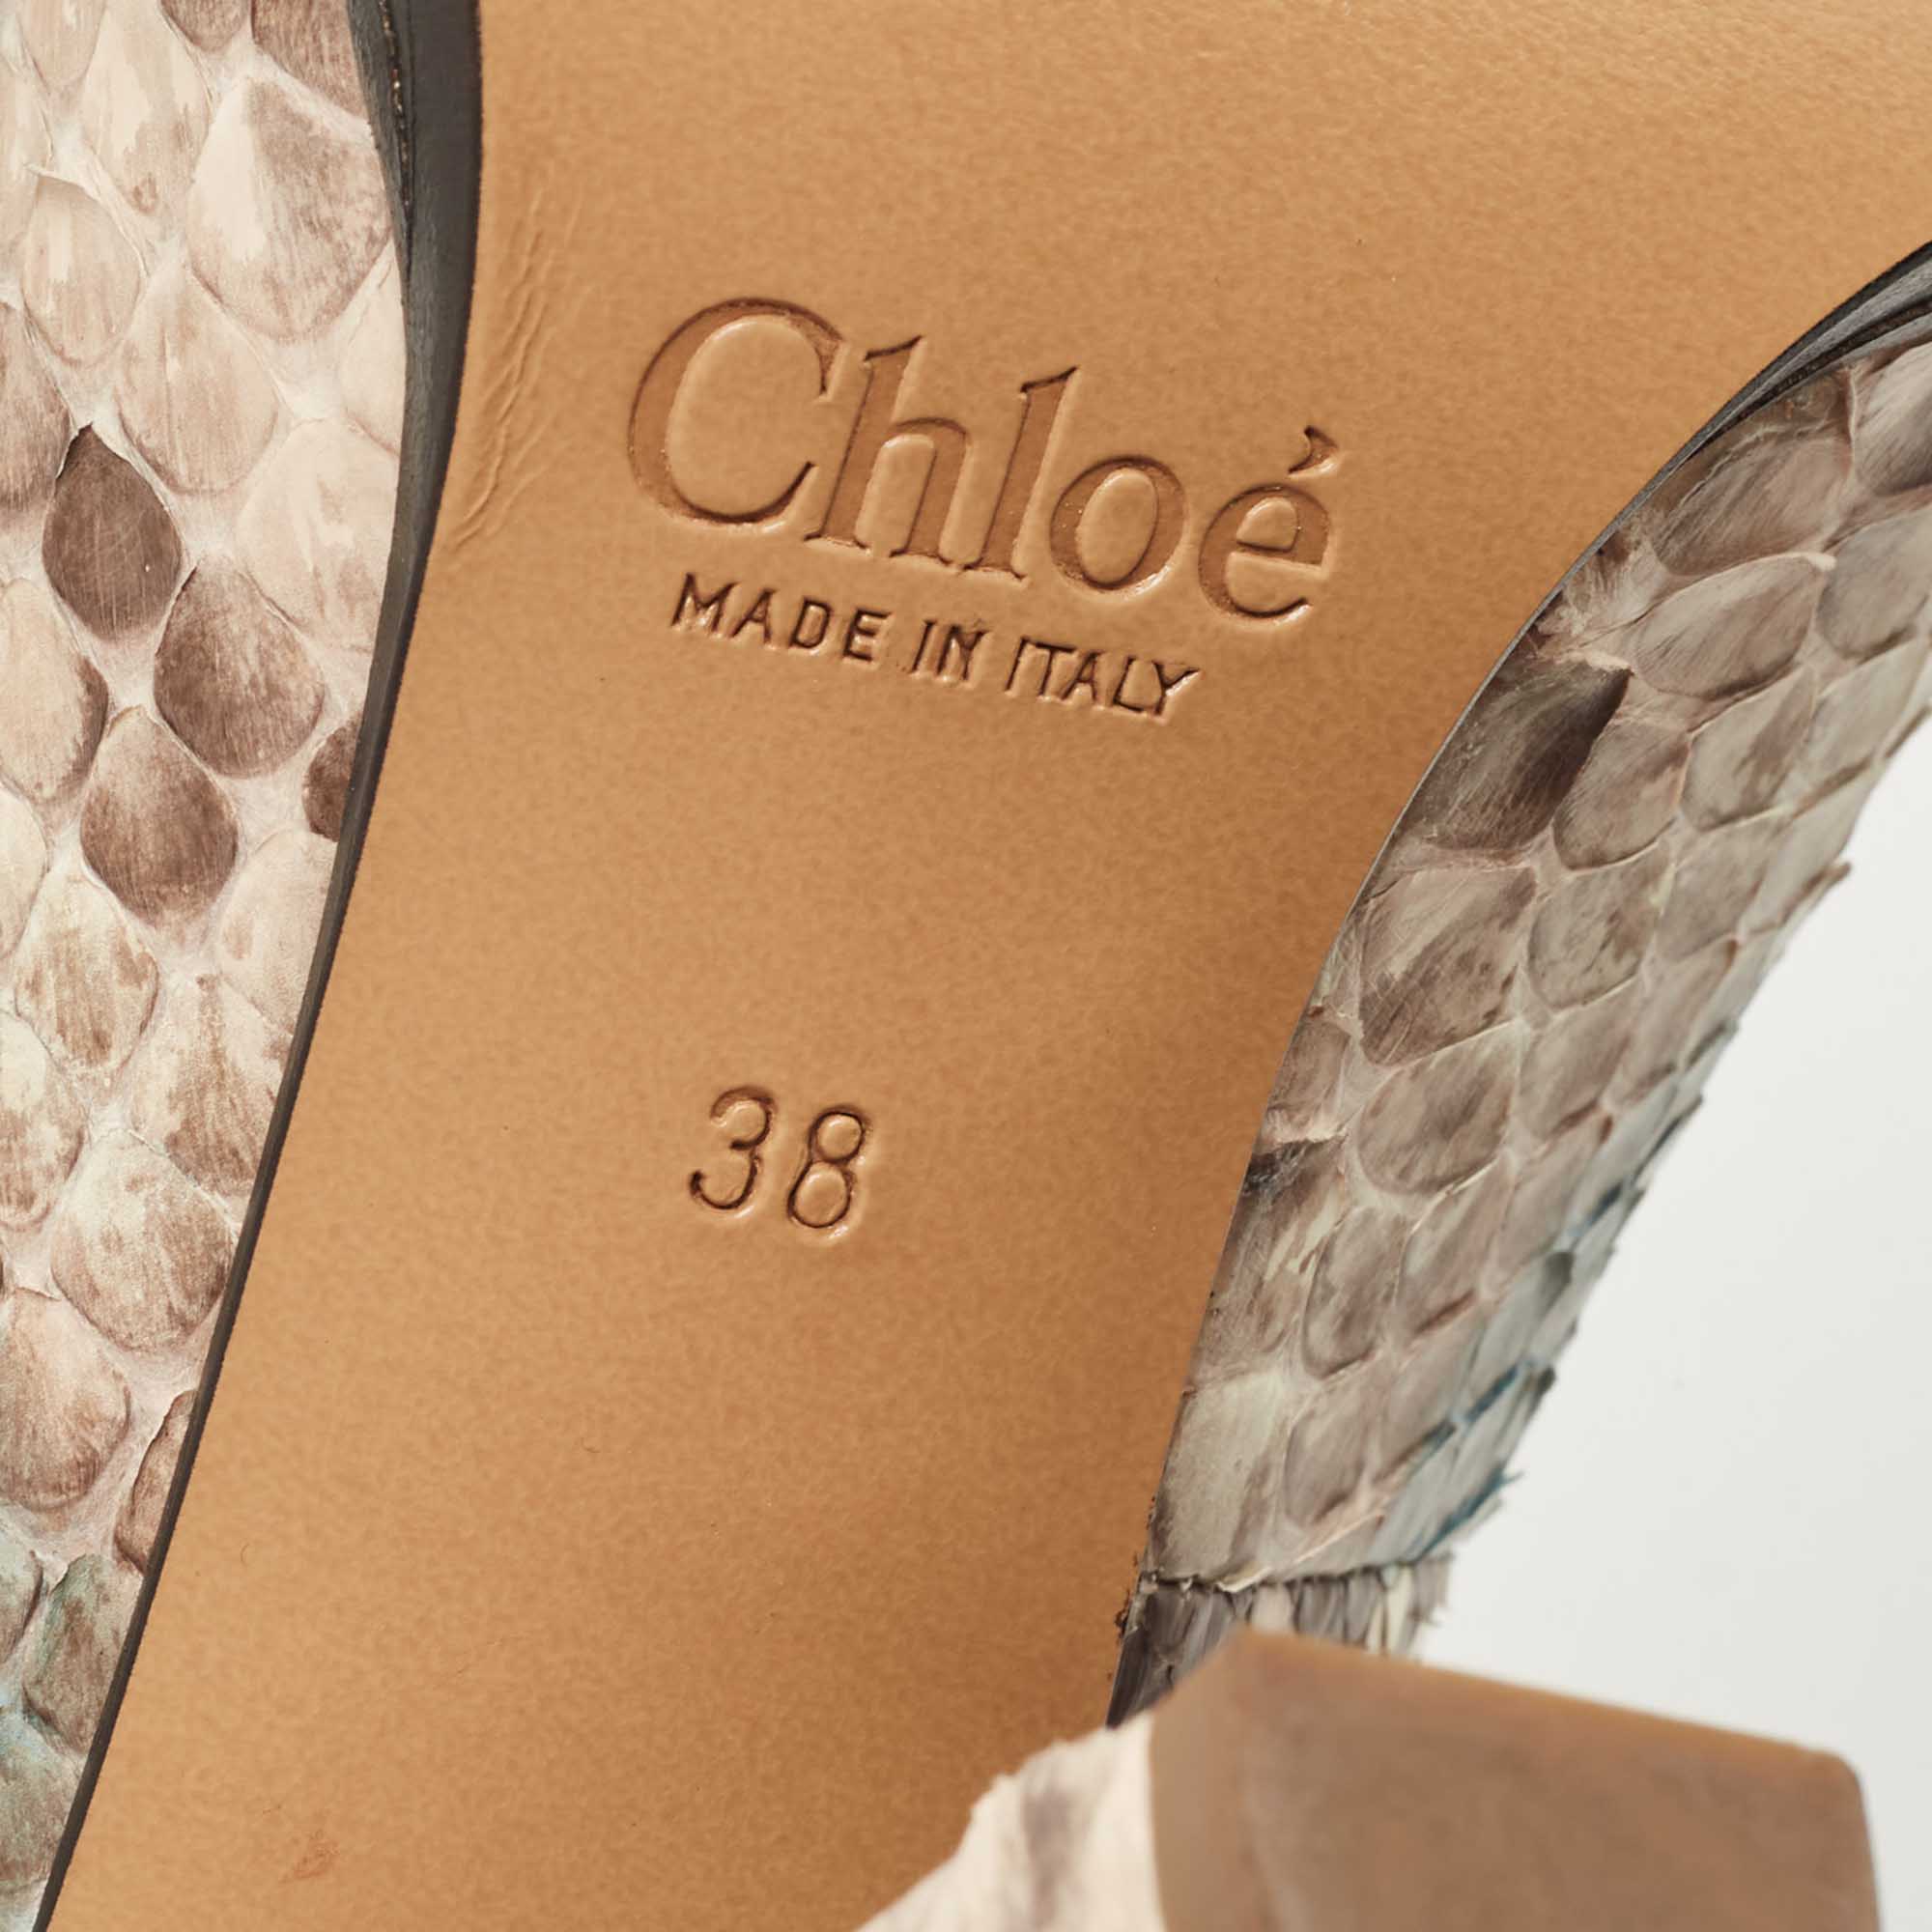 Chloe Tricolor Python Leather Pumps Size 38